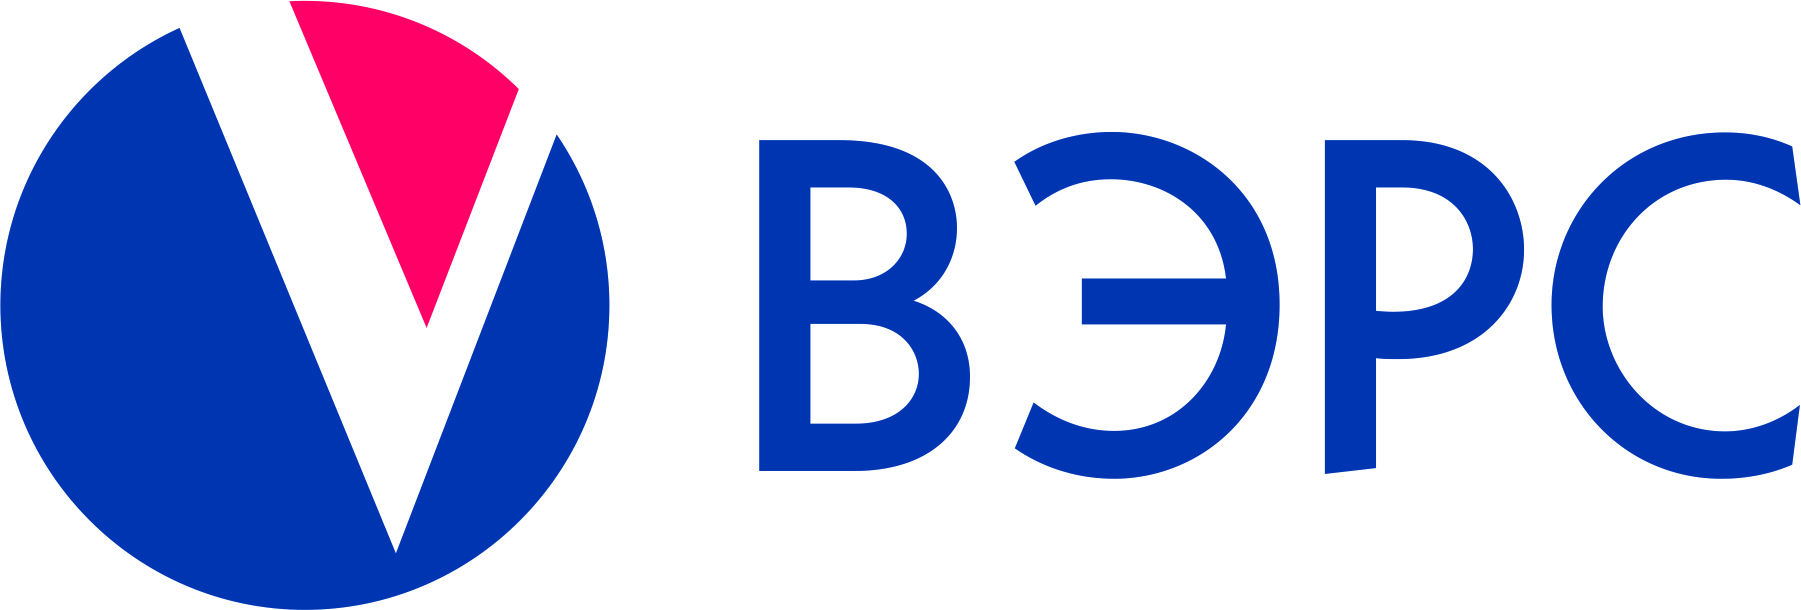 logo_vers.jpg